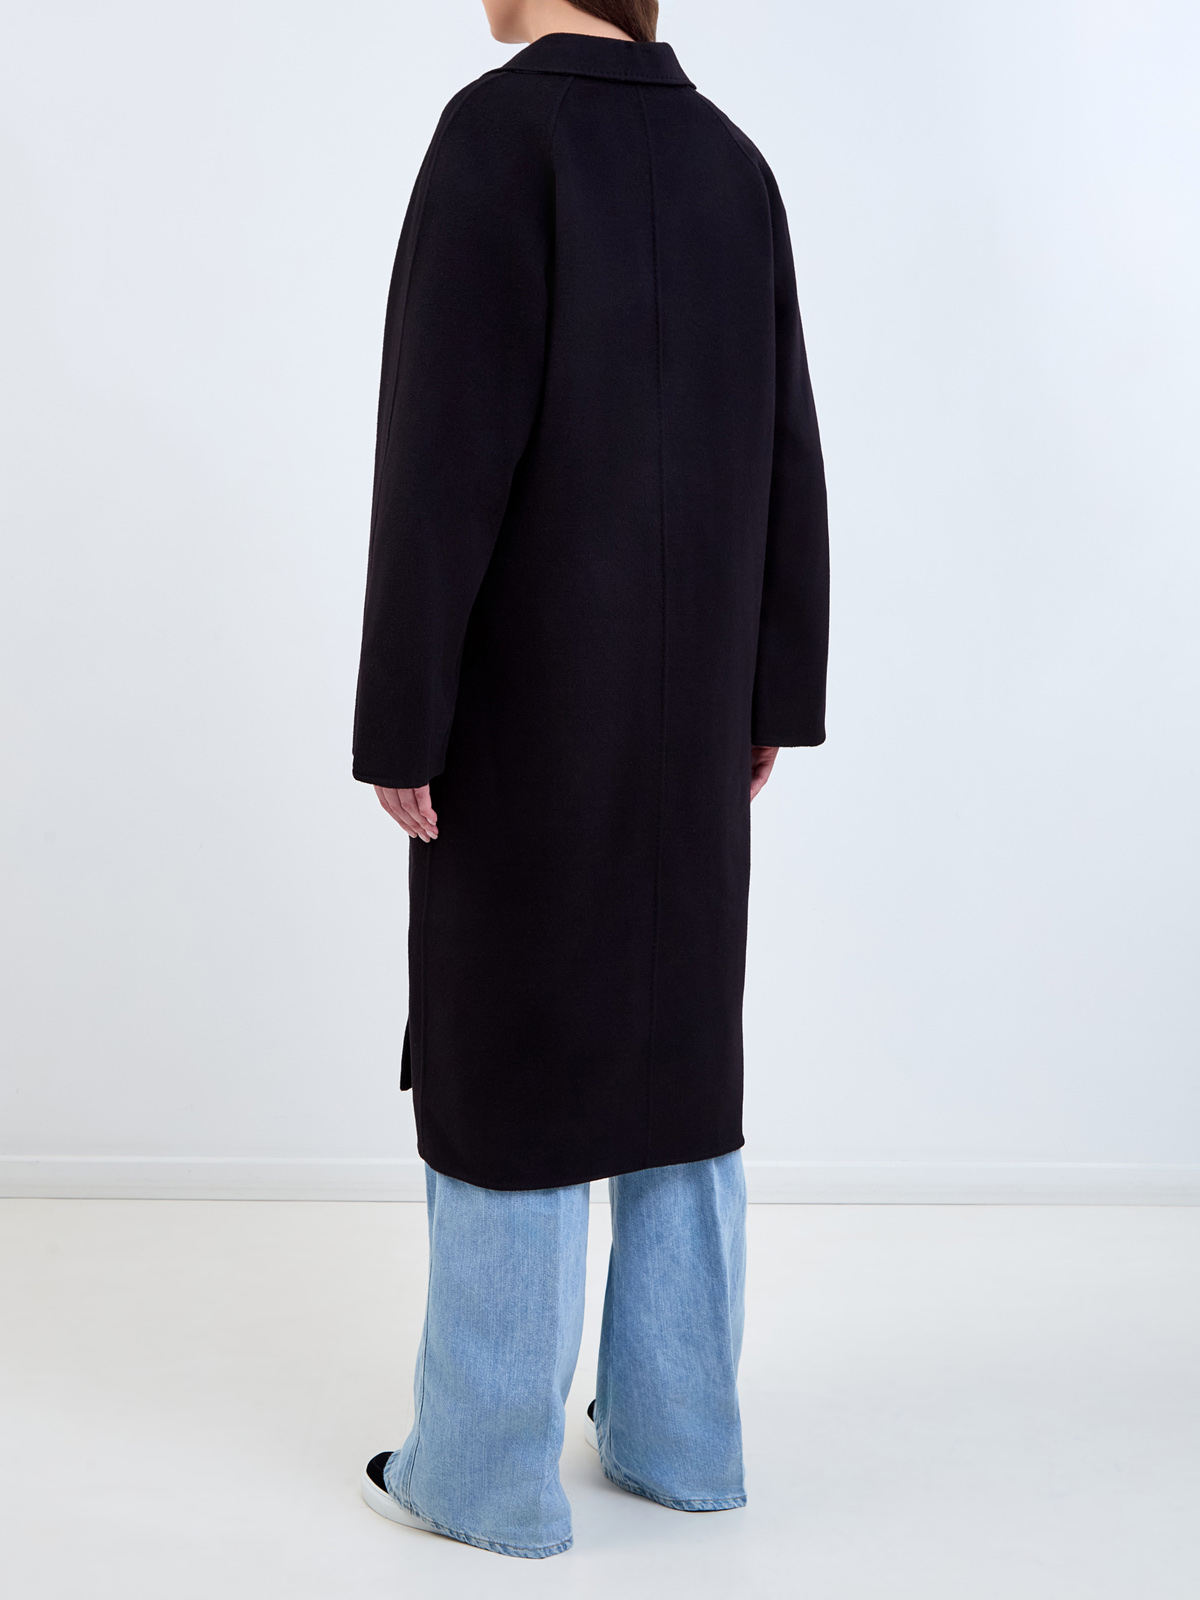 Двубортное пальто кроя oversize из плотной шерстяной ткани KARL LAGERFELD, цвет черный, размер 42;44;46;48 - фото 4